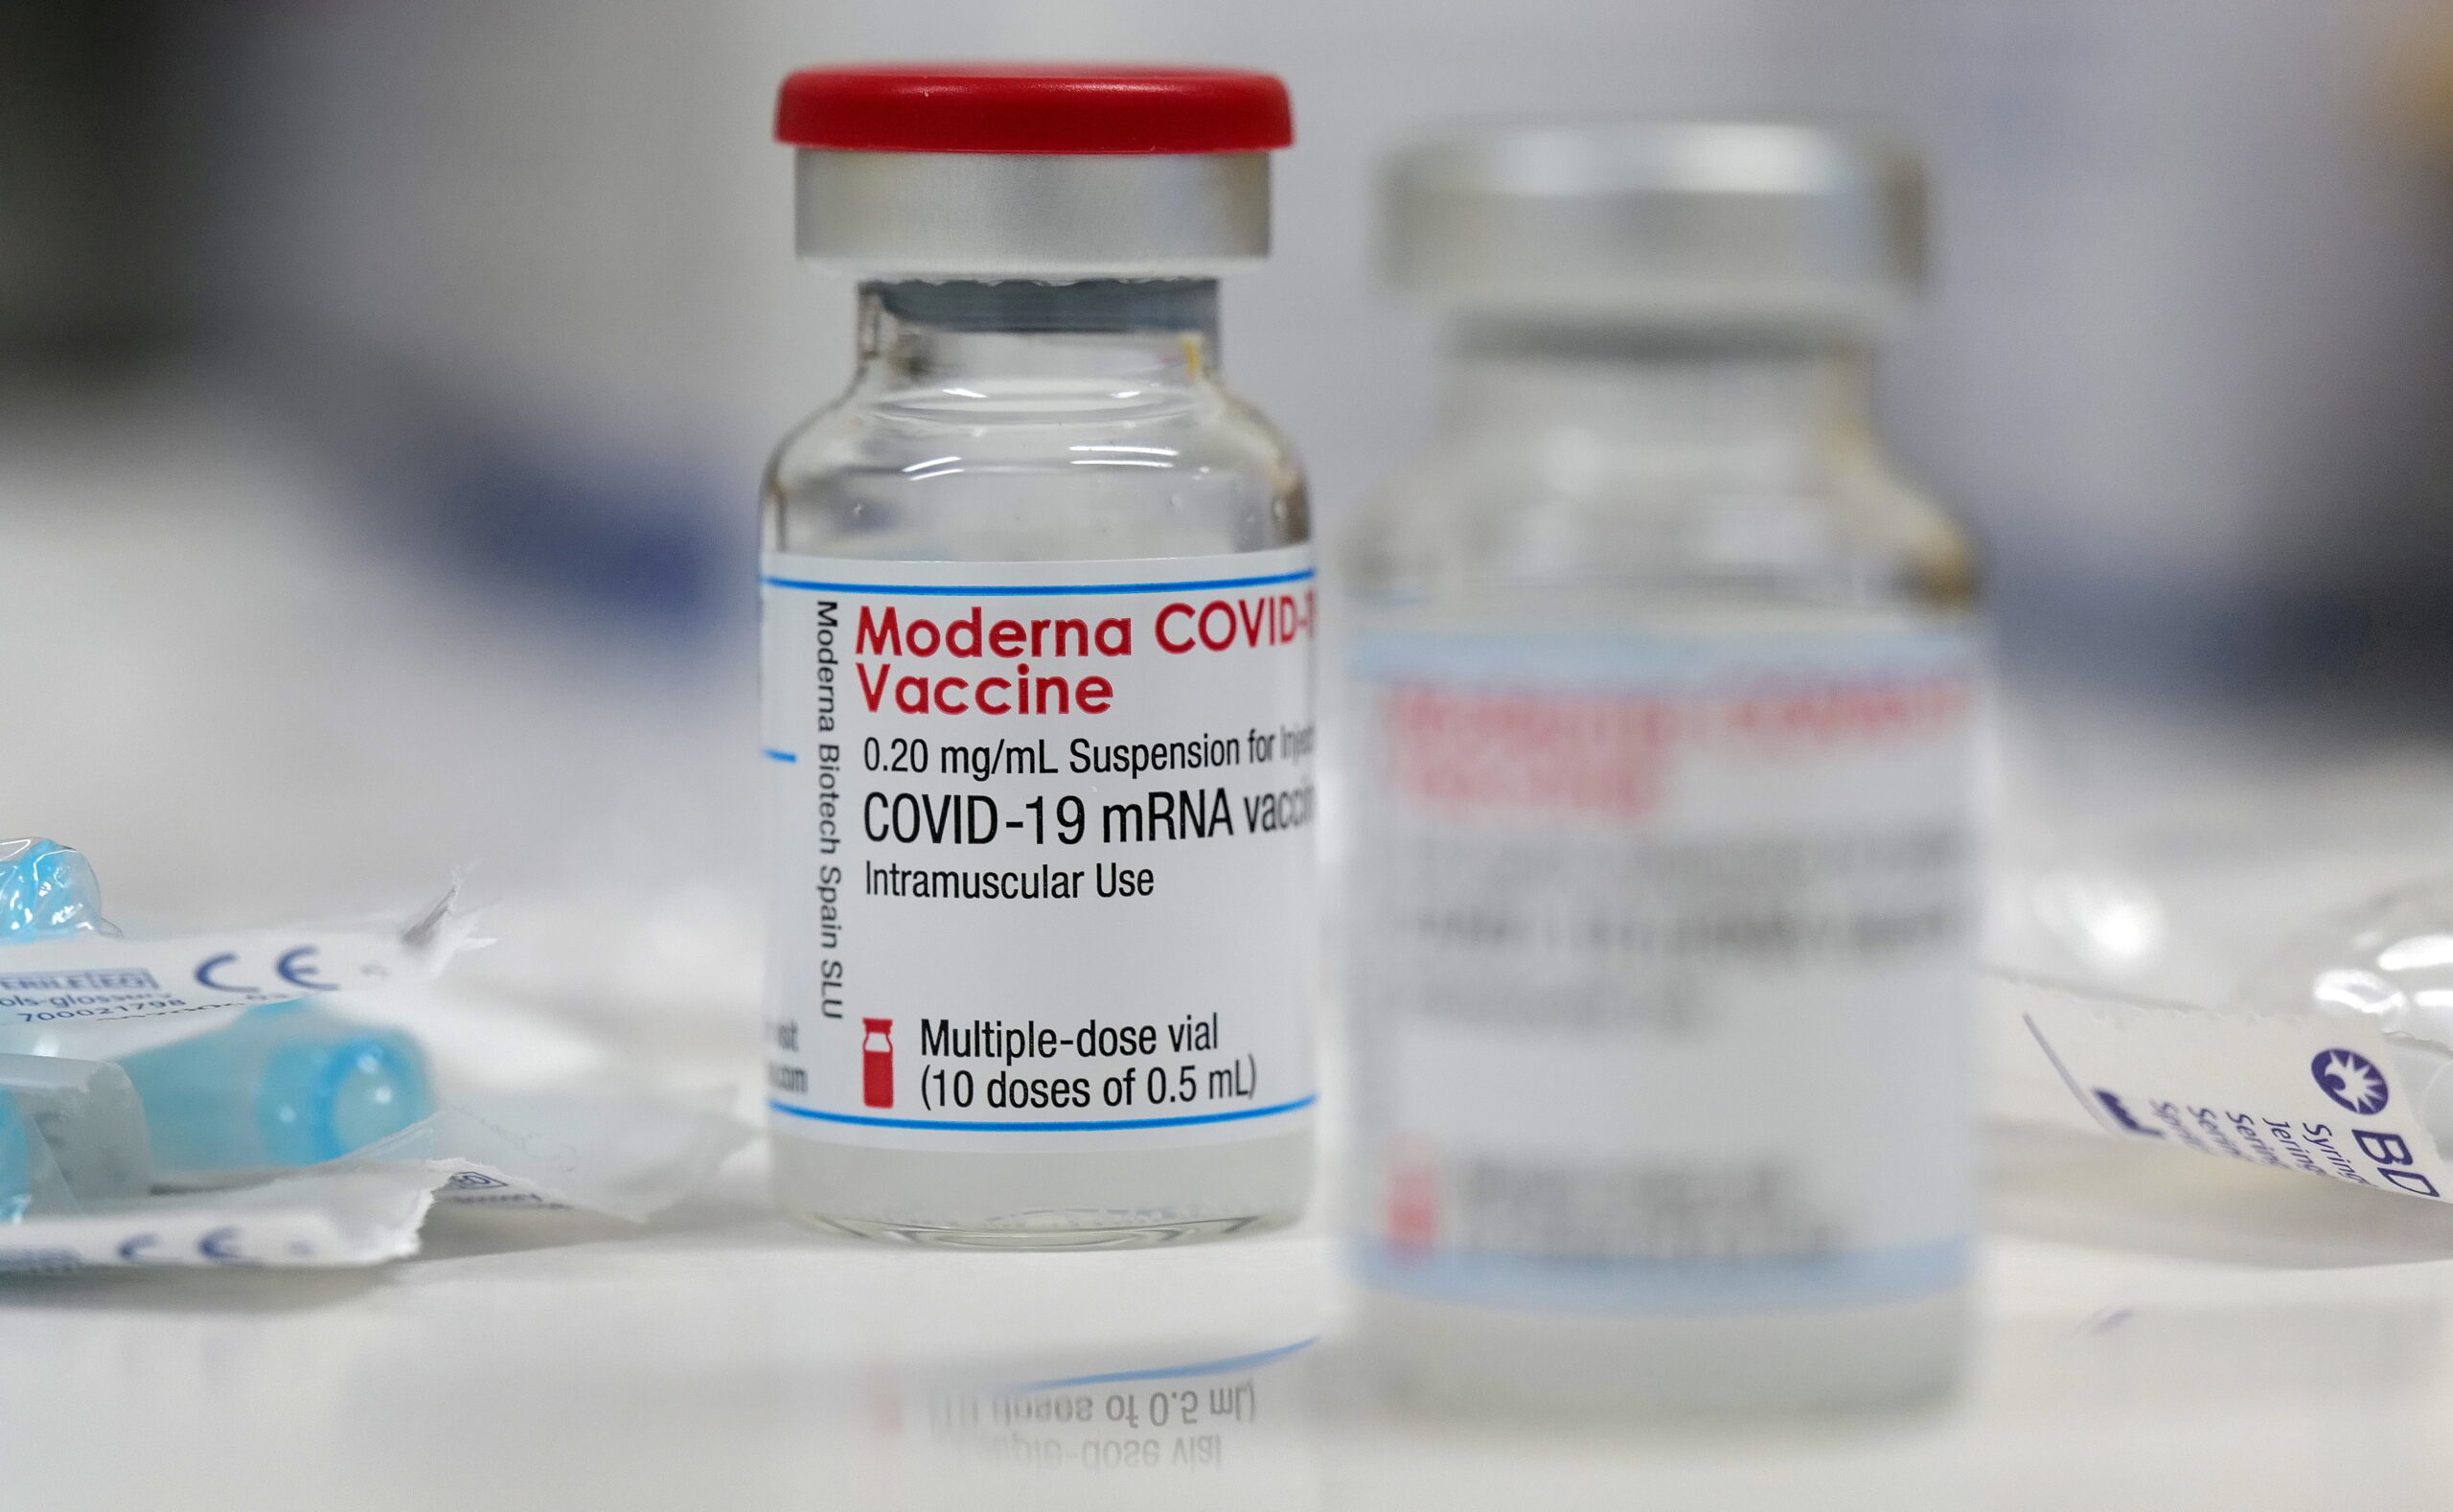 รพ.บำรุงราษฎร์ เปิดจองวัคซีน โมเดอร์นา ดีเดย์ 9 ก.ค. – ธุรกิจ